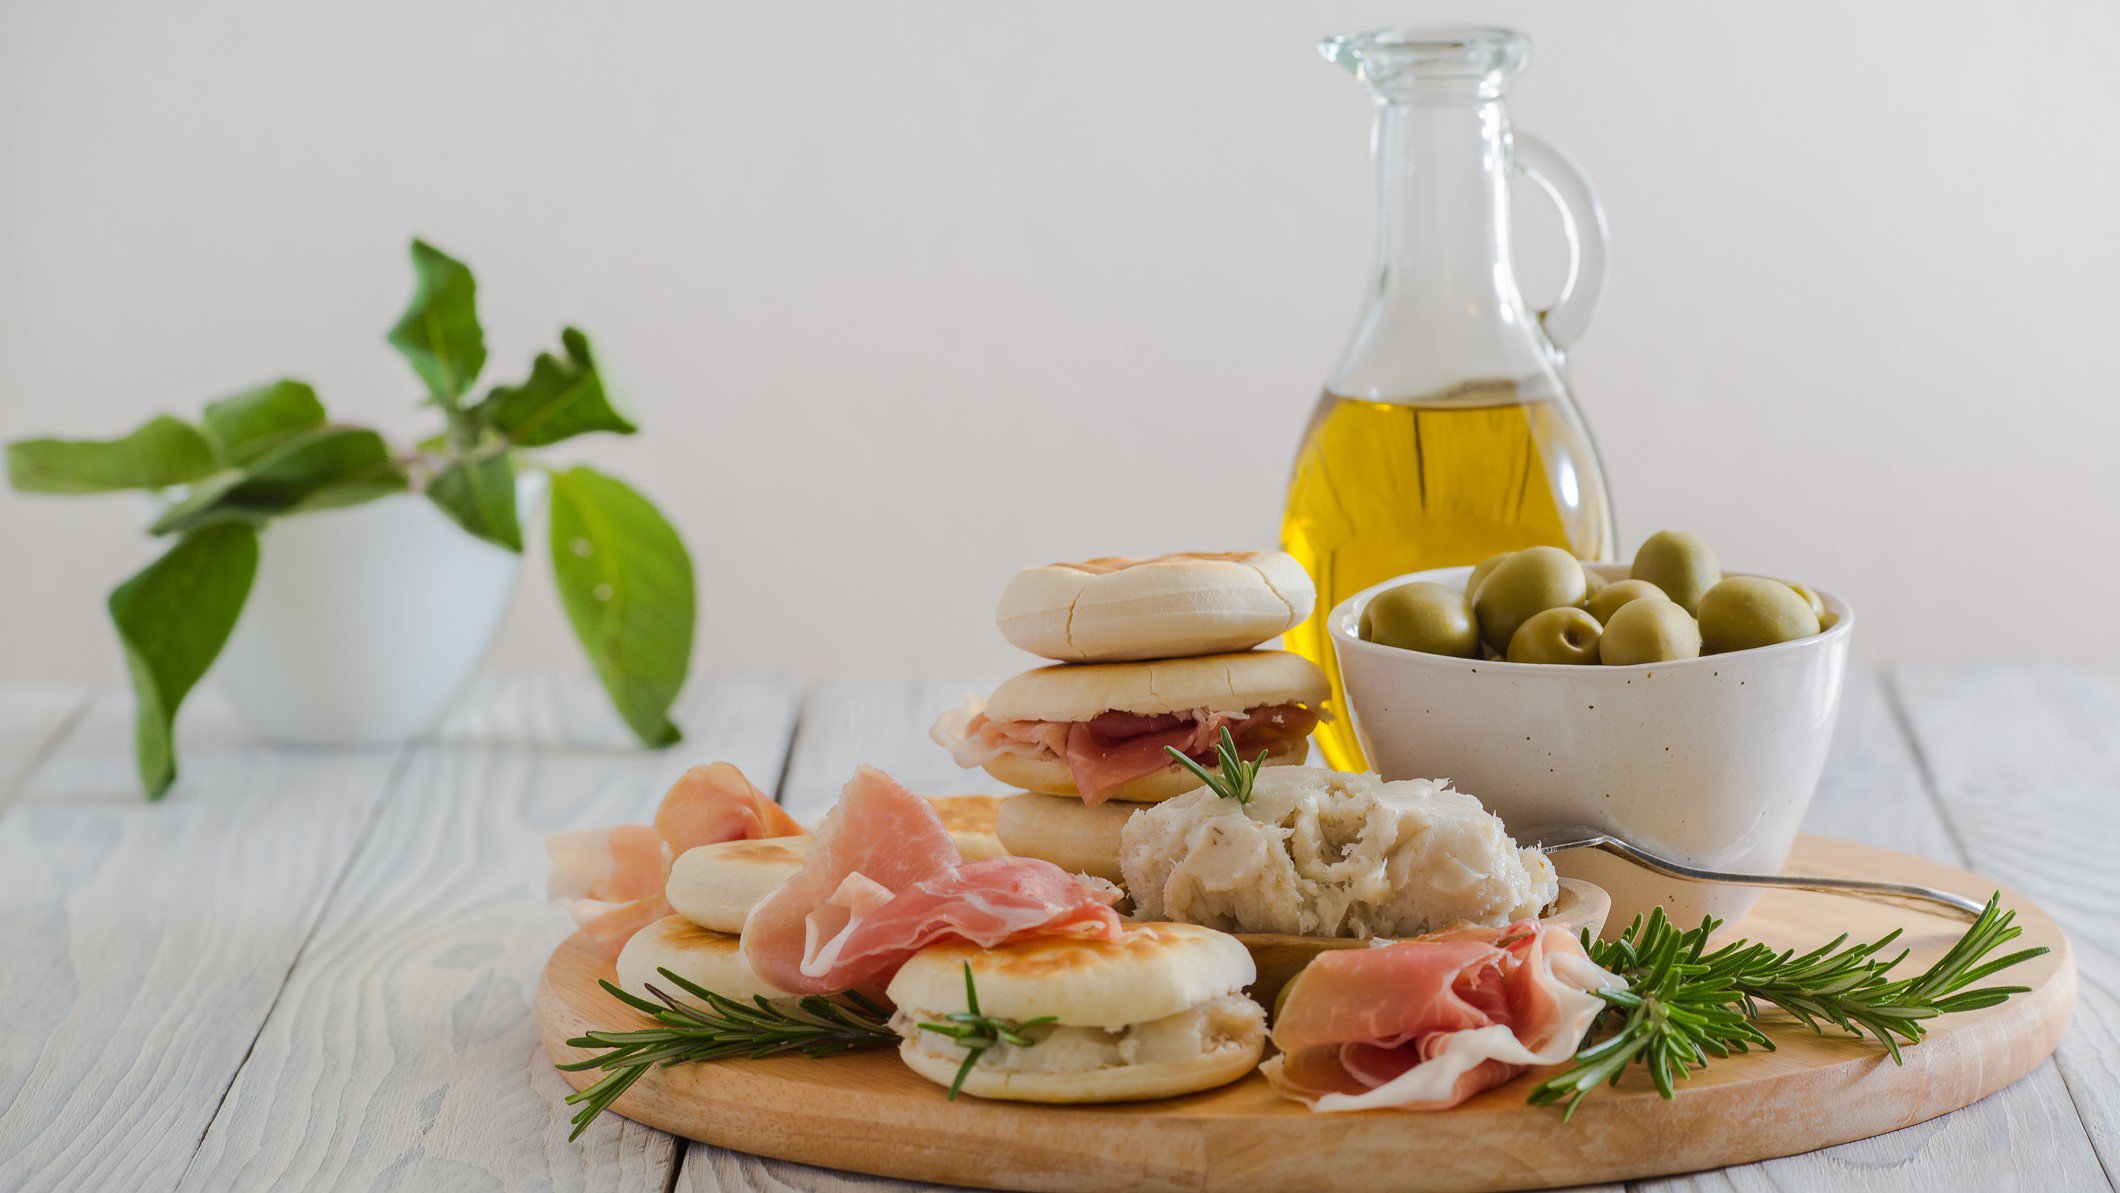 Tigelle mit La Cunza auf Holzbrett mit rohem Schinken, Oliven in einer Schale und Rosmarin. Im Hintergrund Lorbeer und Olivenöl. Frontalansicht.